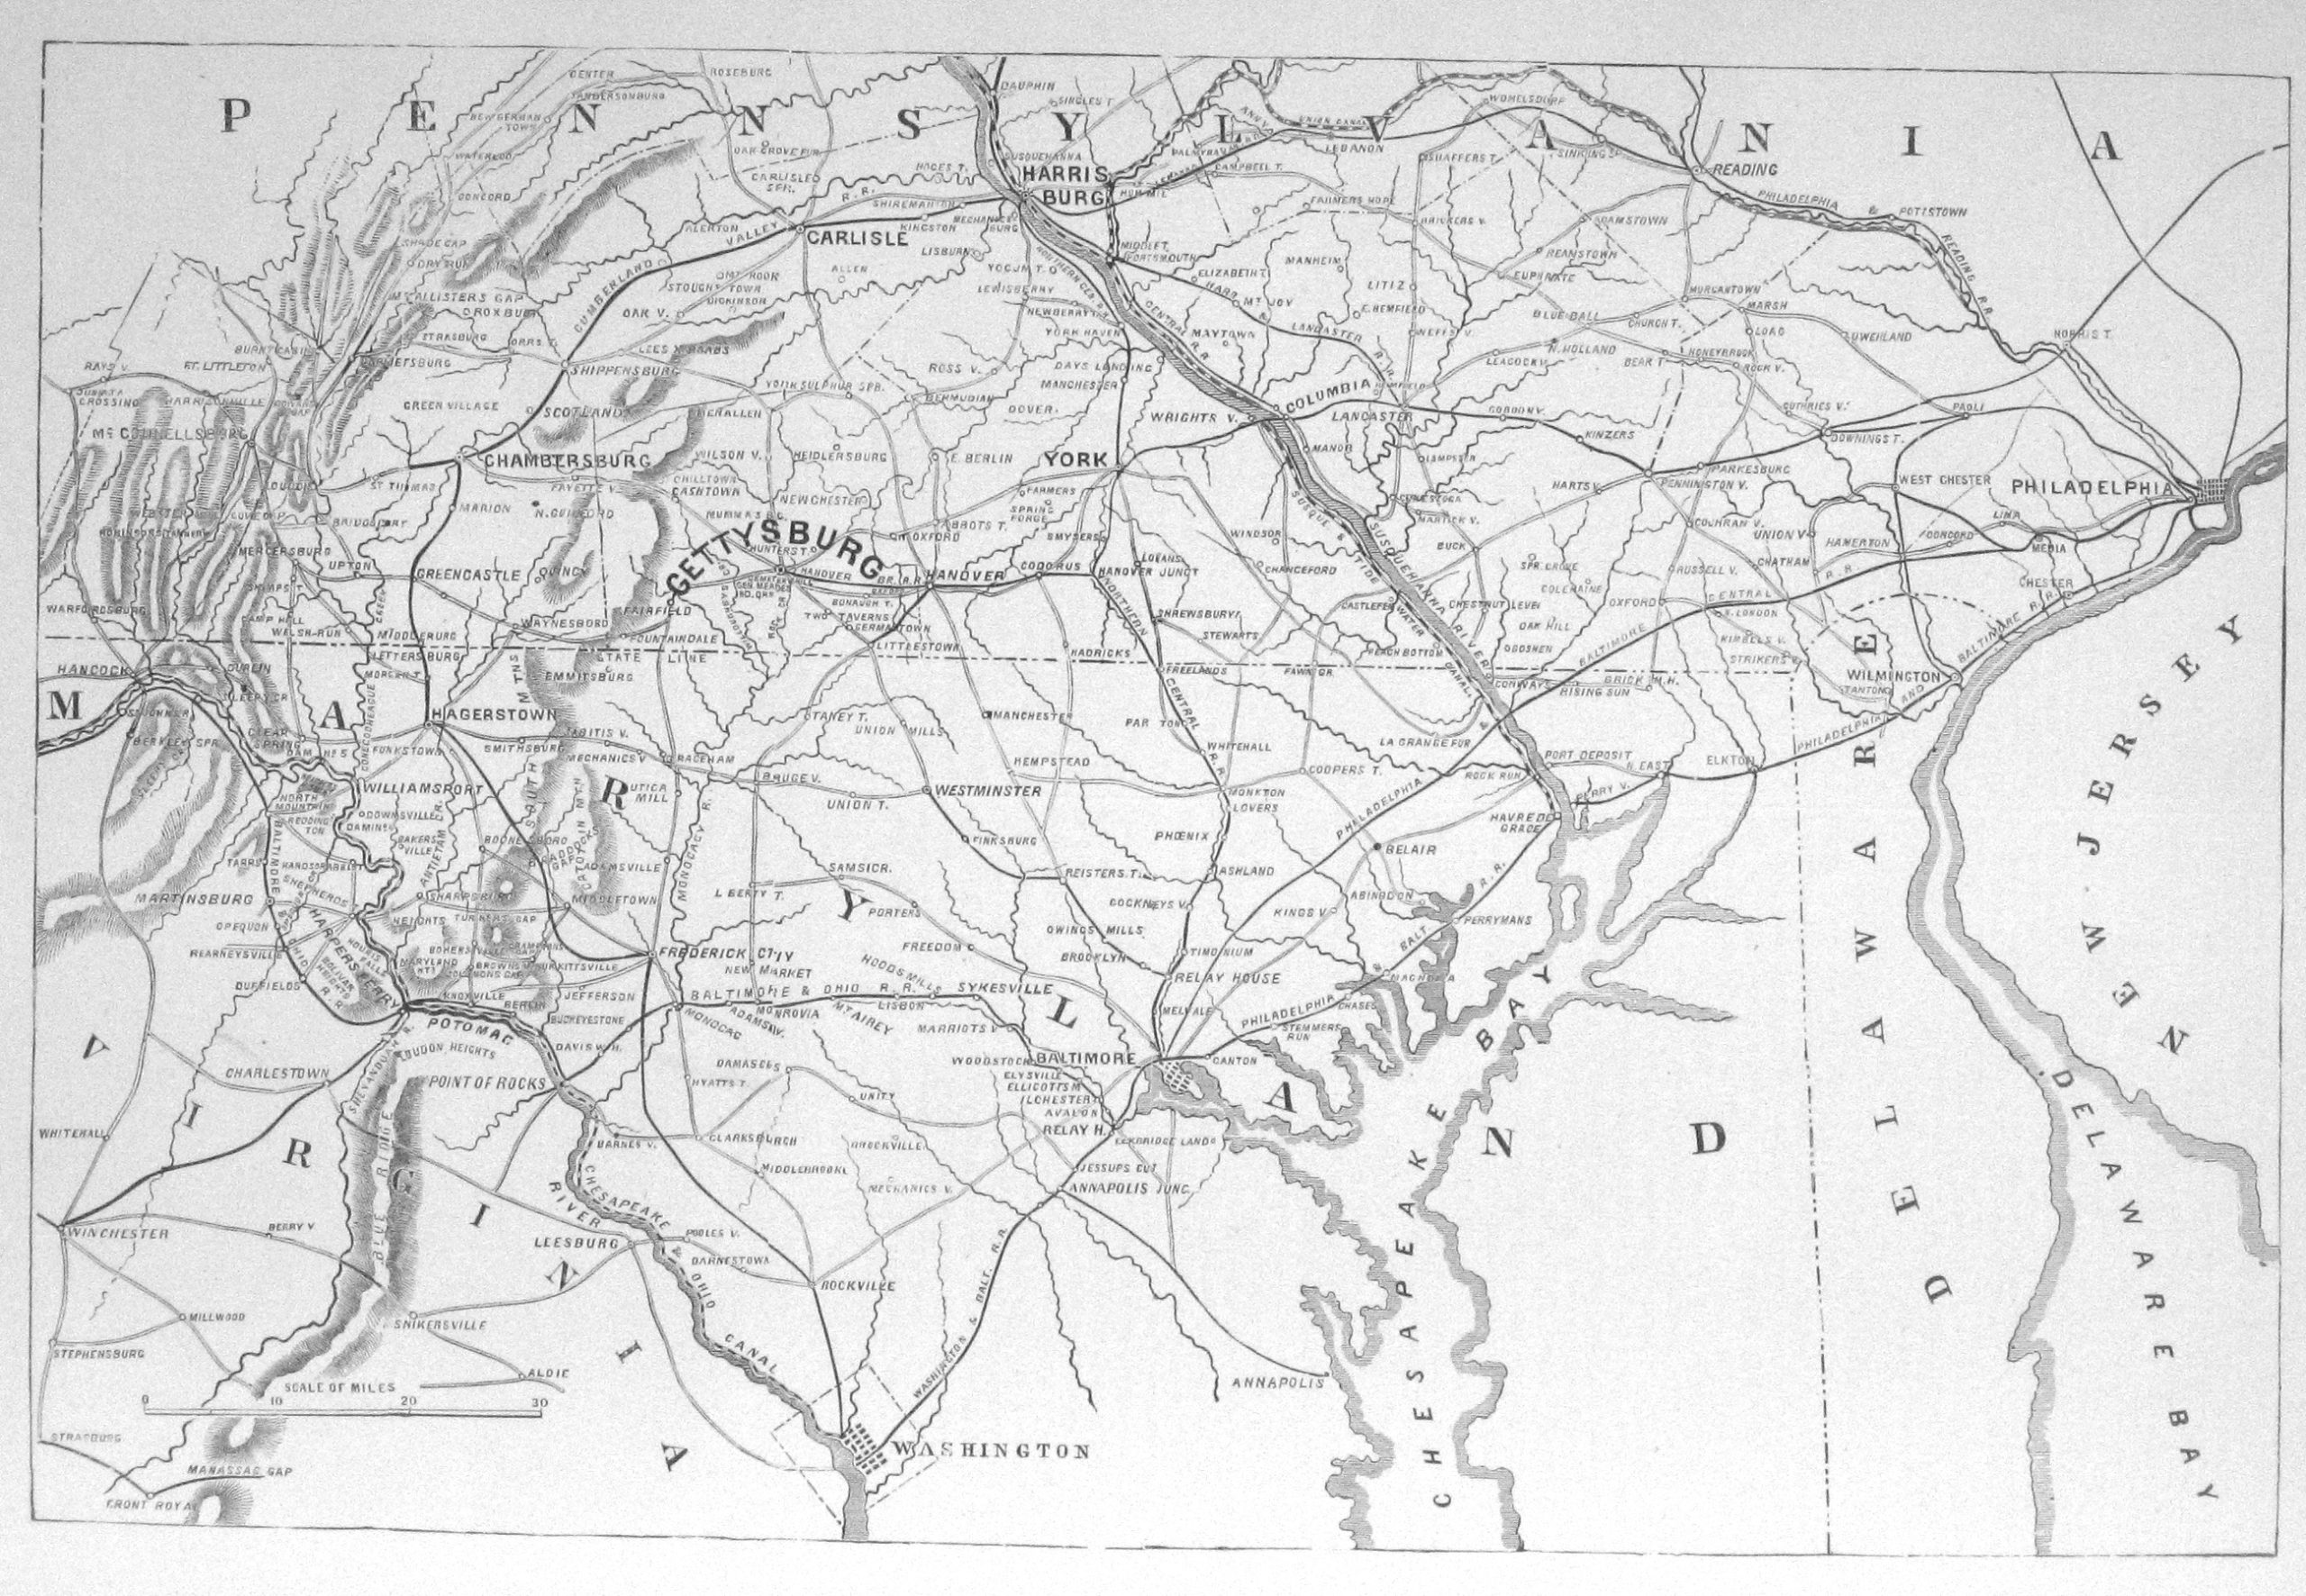 gettysburg region map scaled